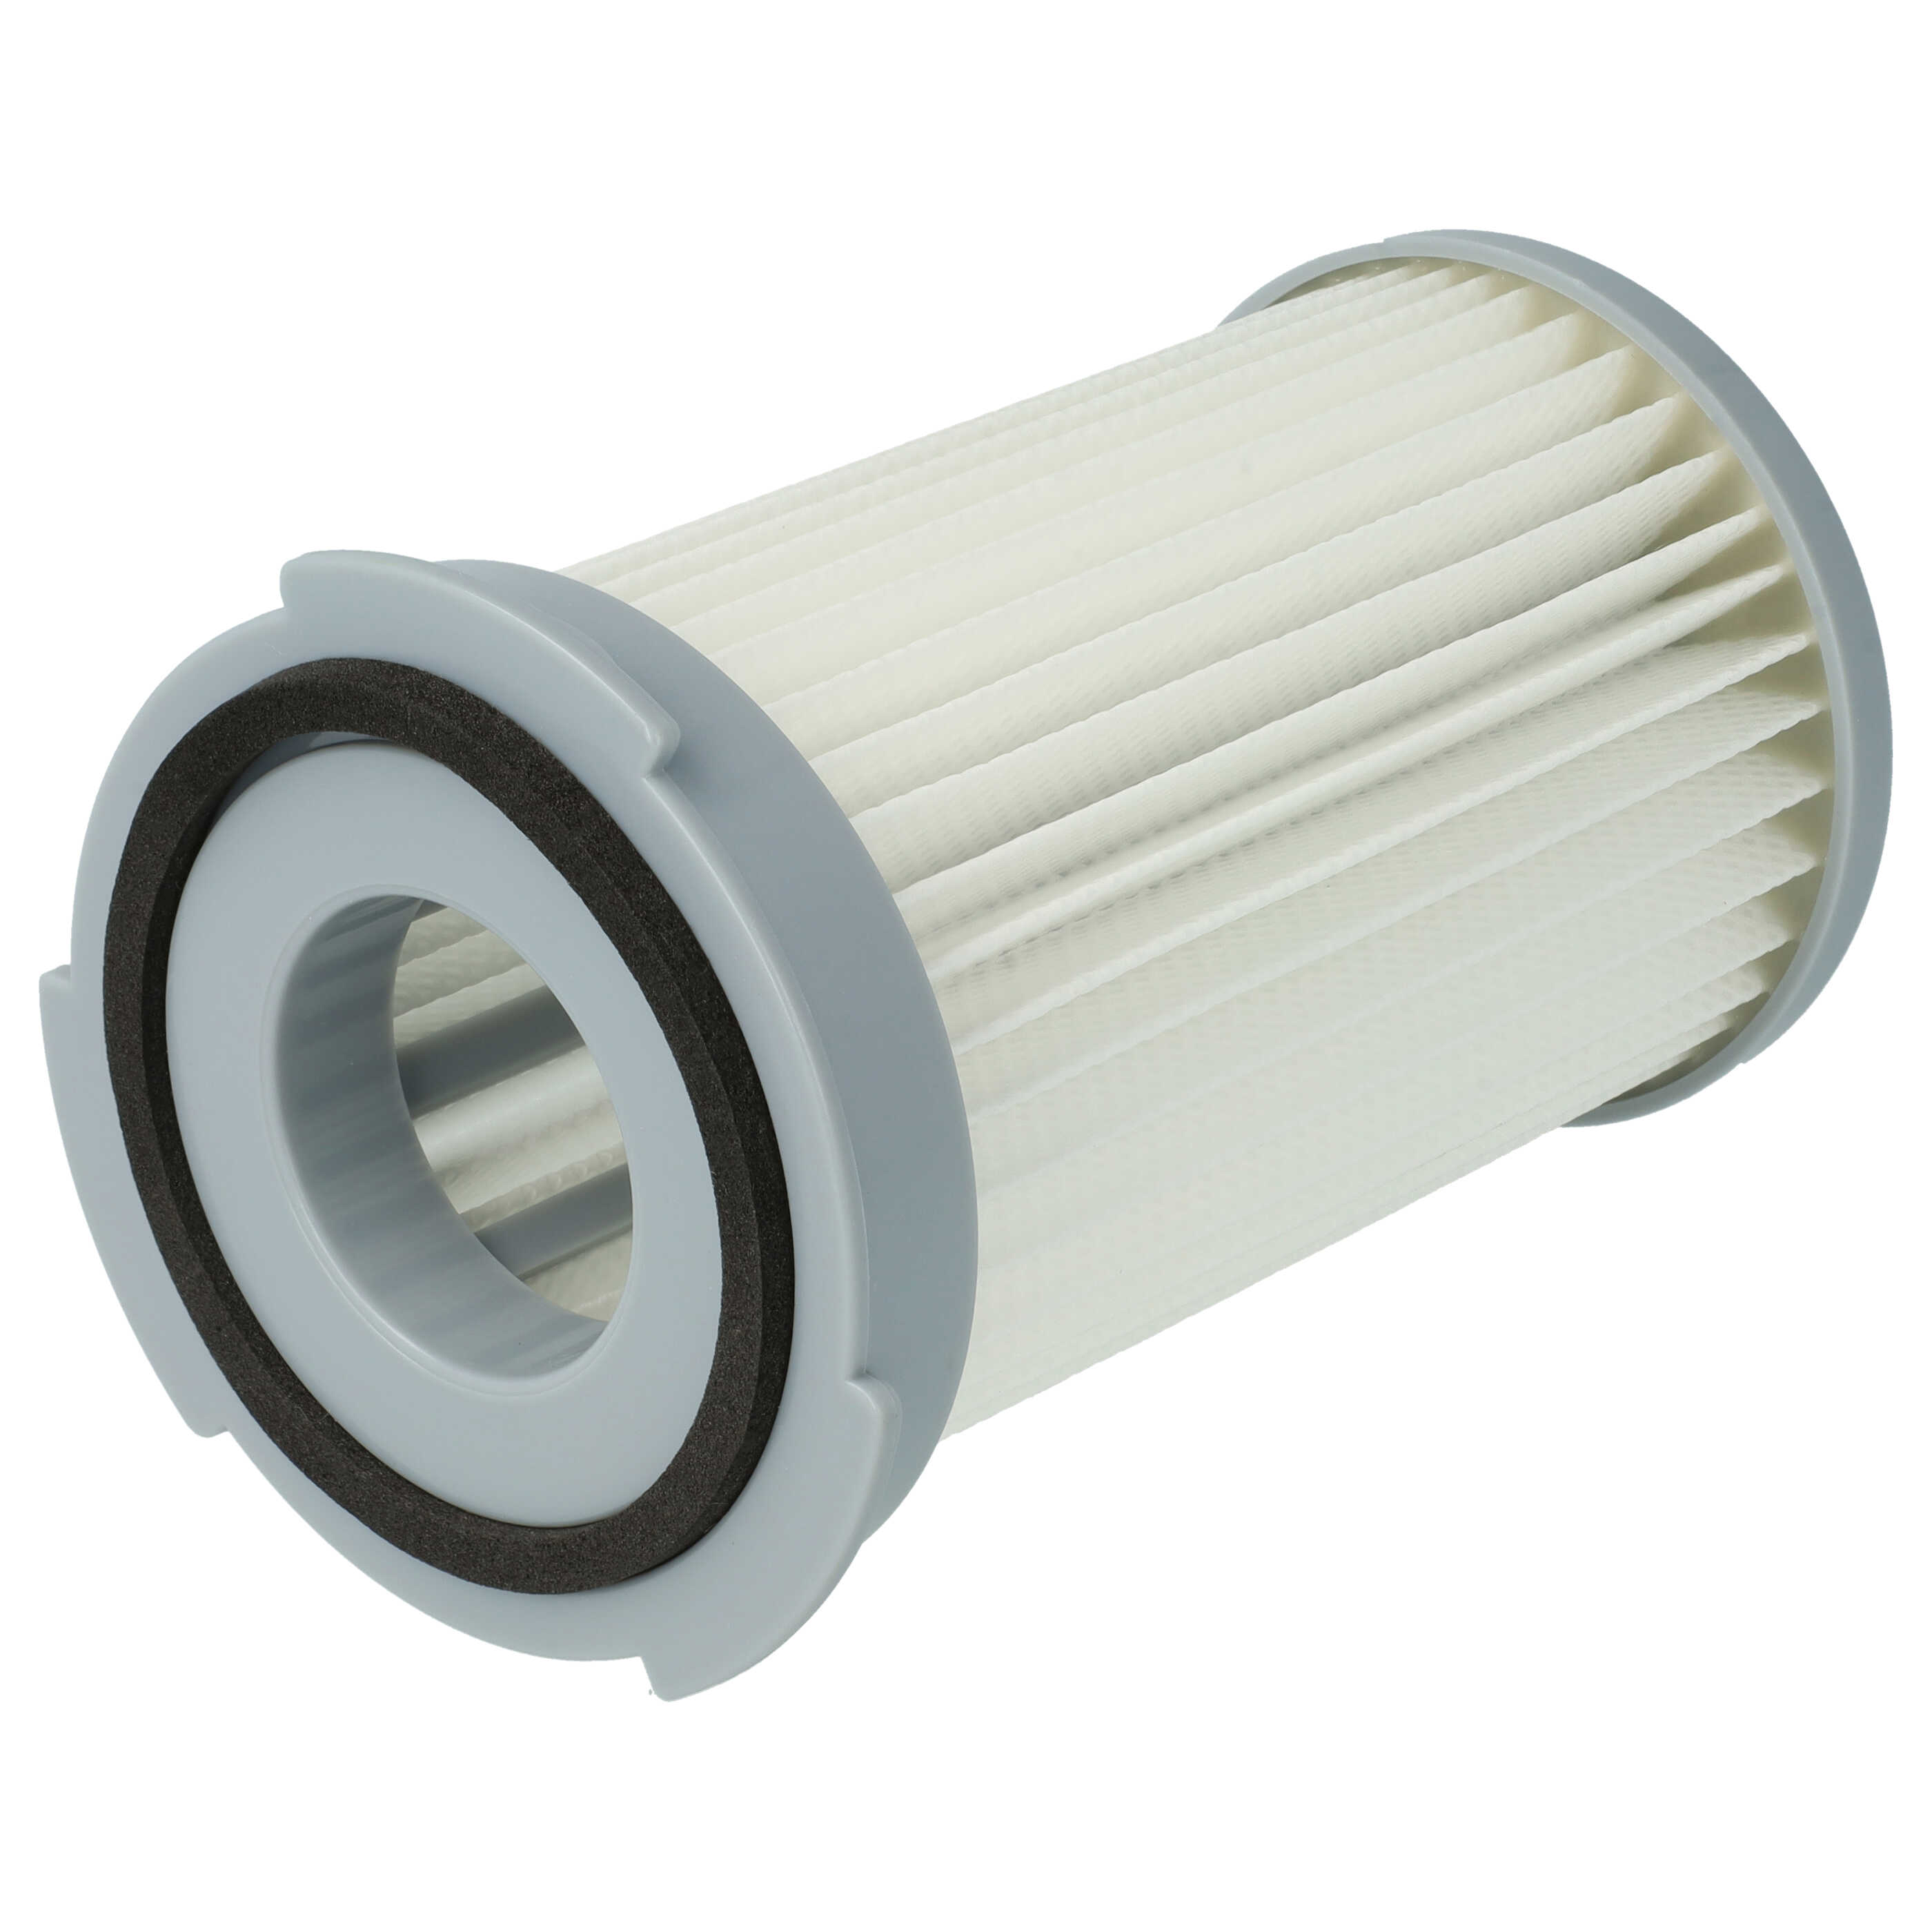 Filtre remplace Electrolux 9001966051 pour aspirateur - filtre HEPA F5